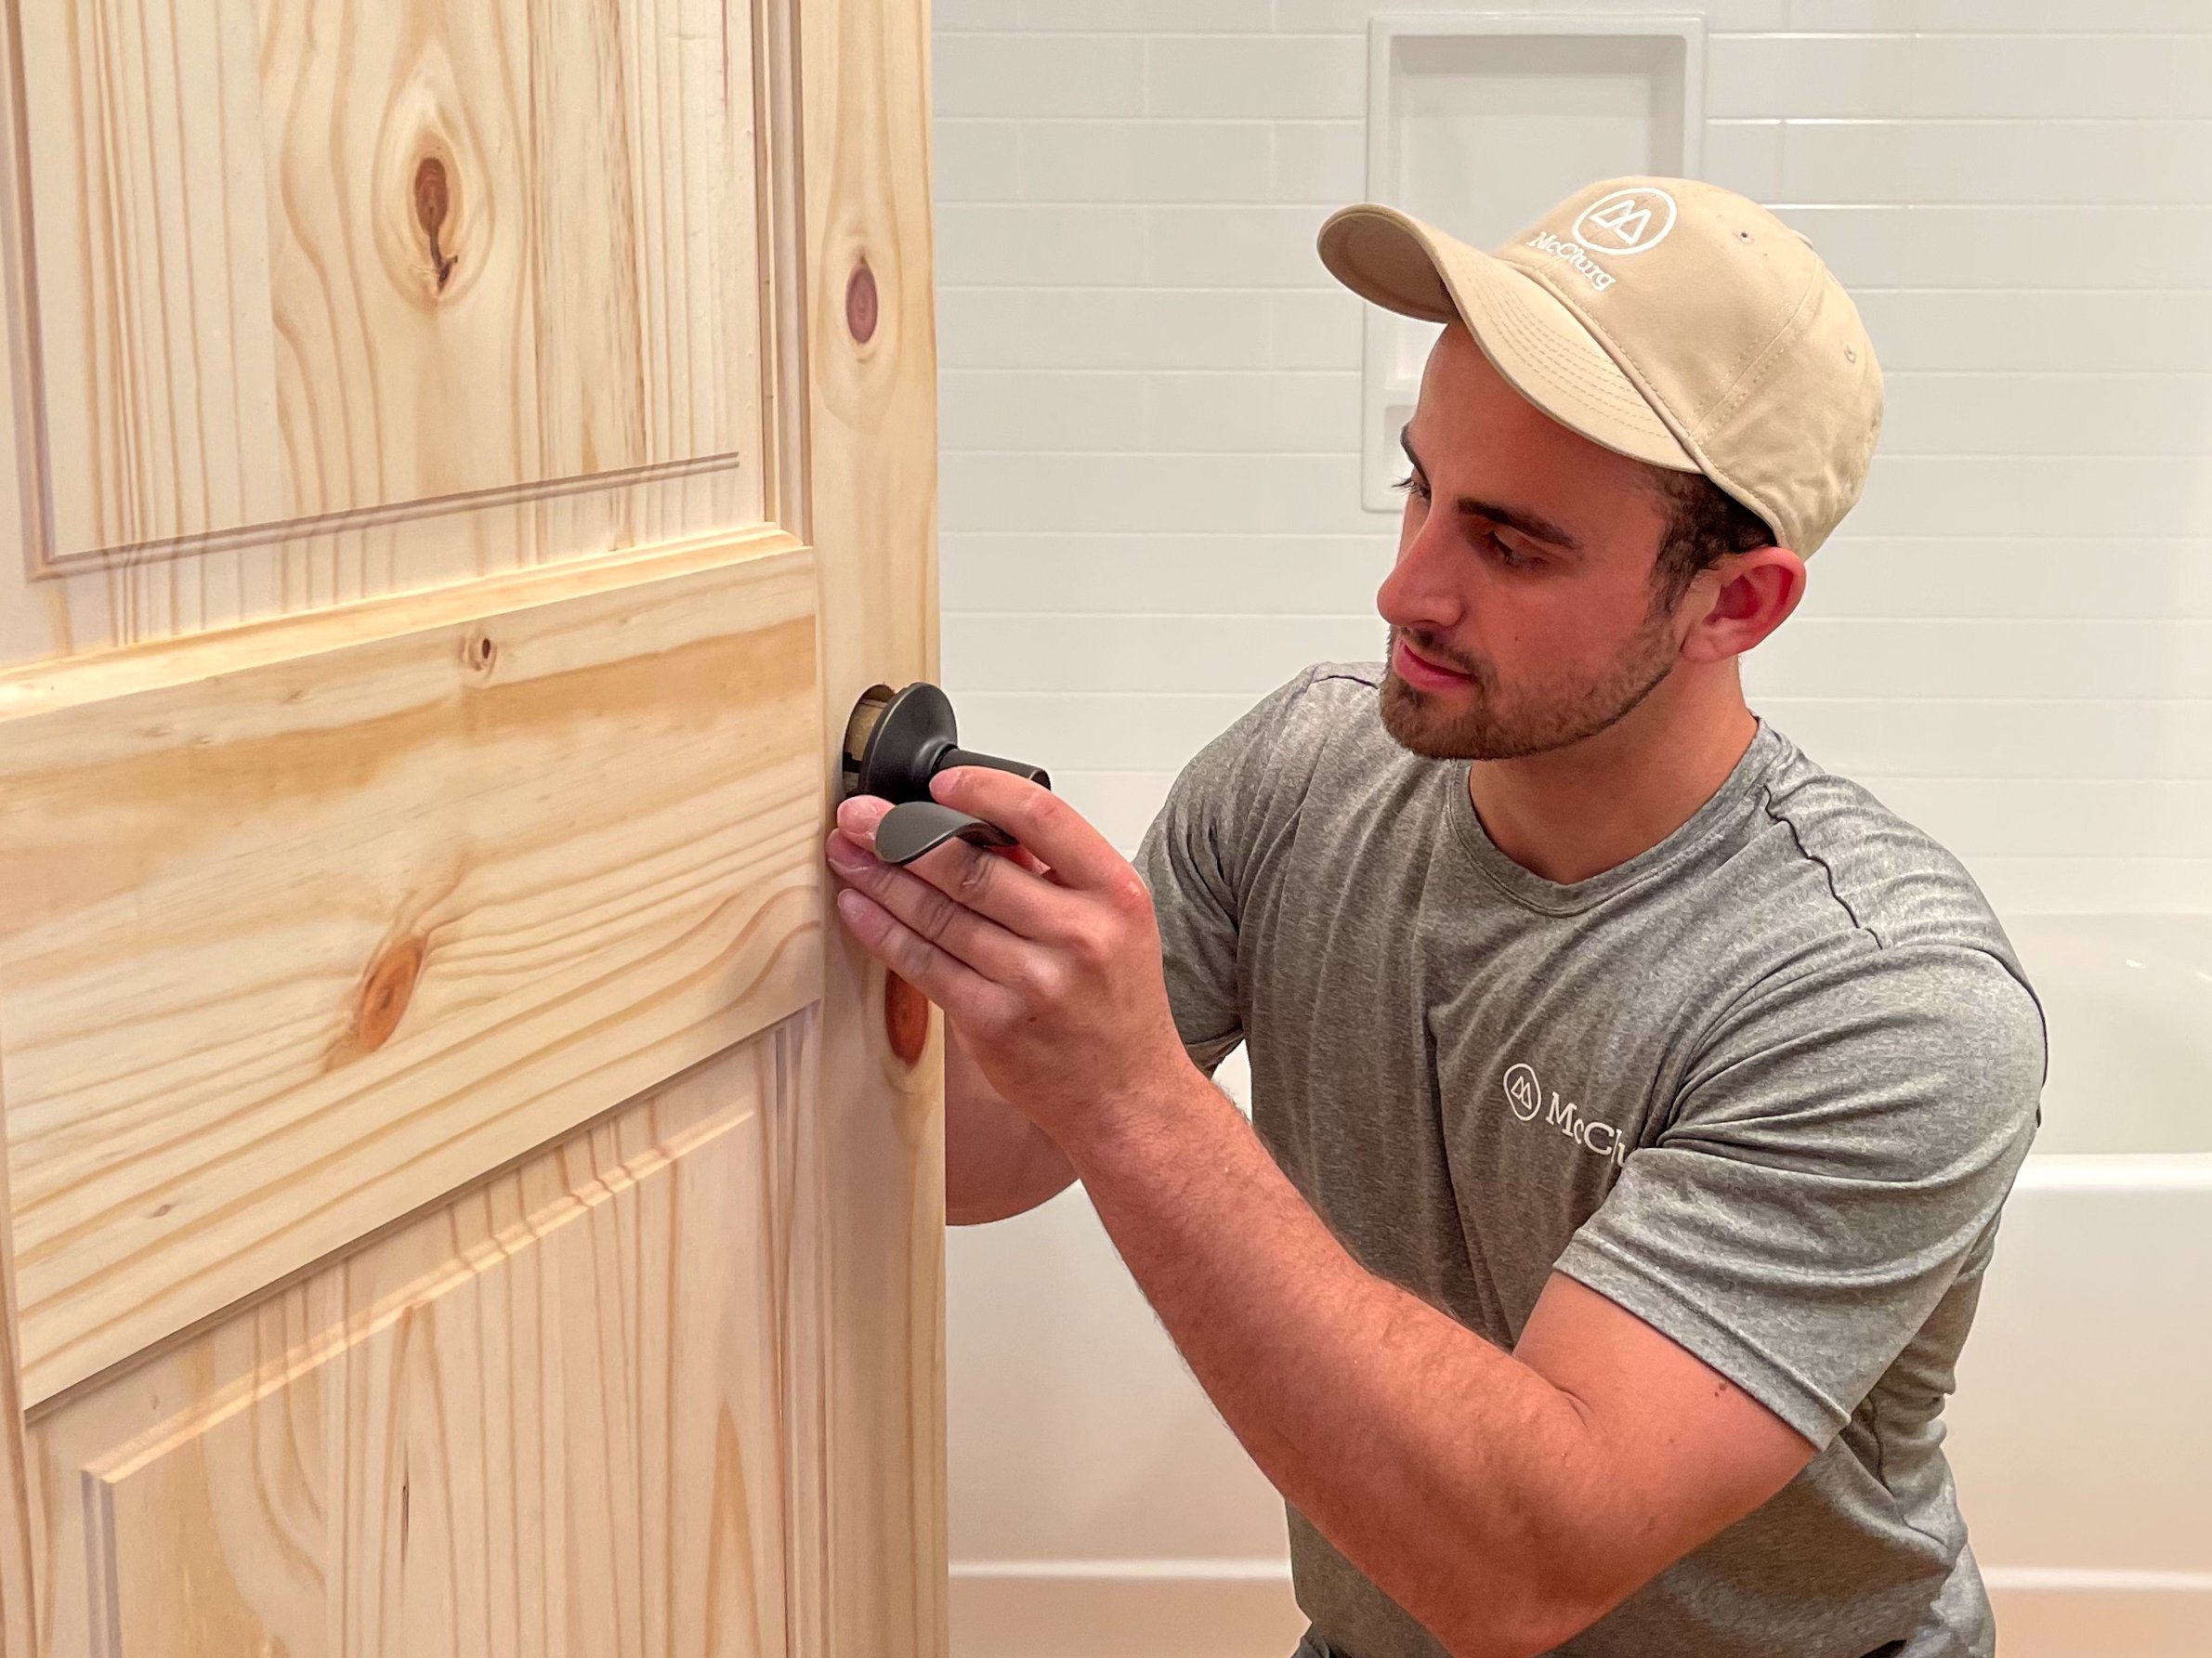 Carpenter repairing door knob